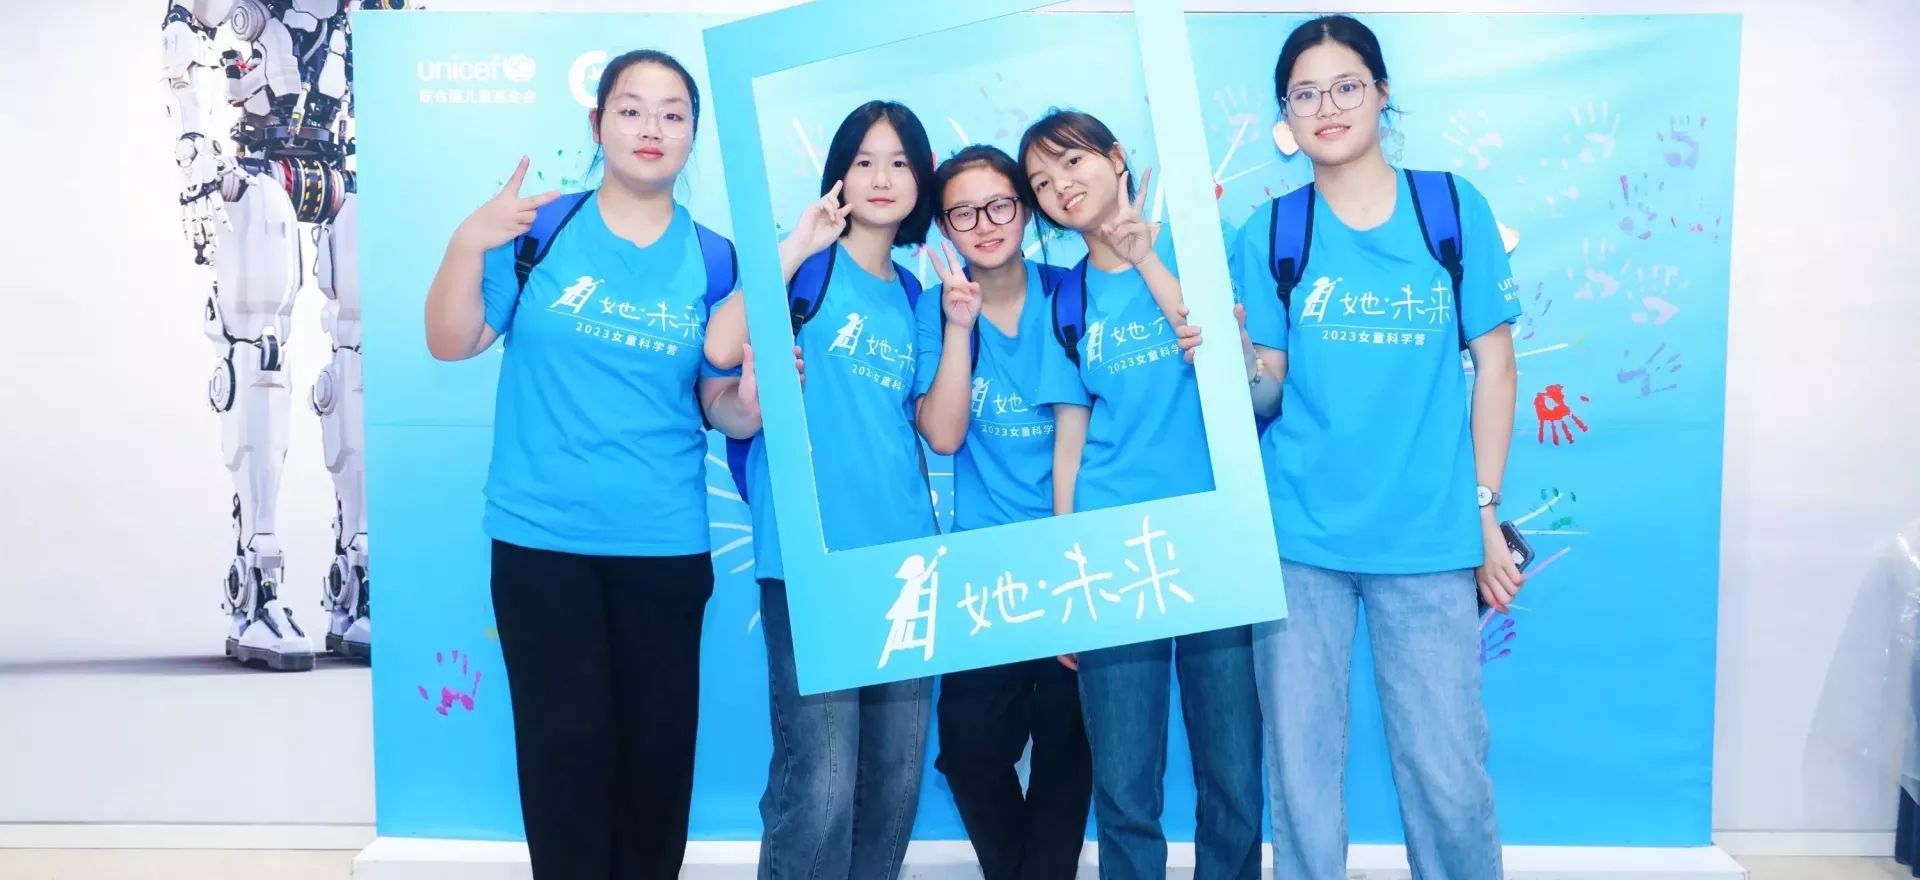 在联合国儿童基金会驻华办事处的支持下，中国科协青少年科技中心、中国青少年科技教育工作者协会共同主办了2023年“她·未来”女童科学营，参营的女童分别来自云南、广西、四川、宁夏。